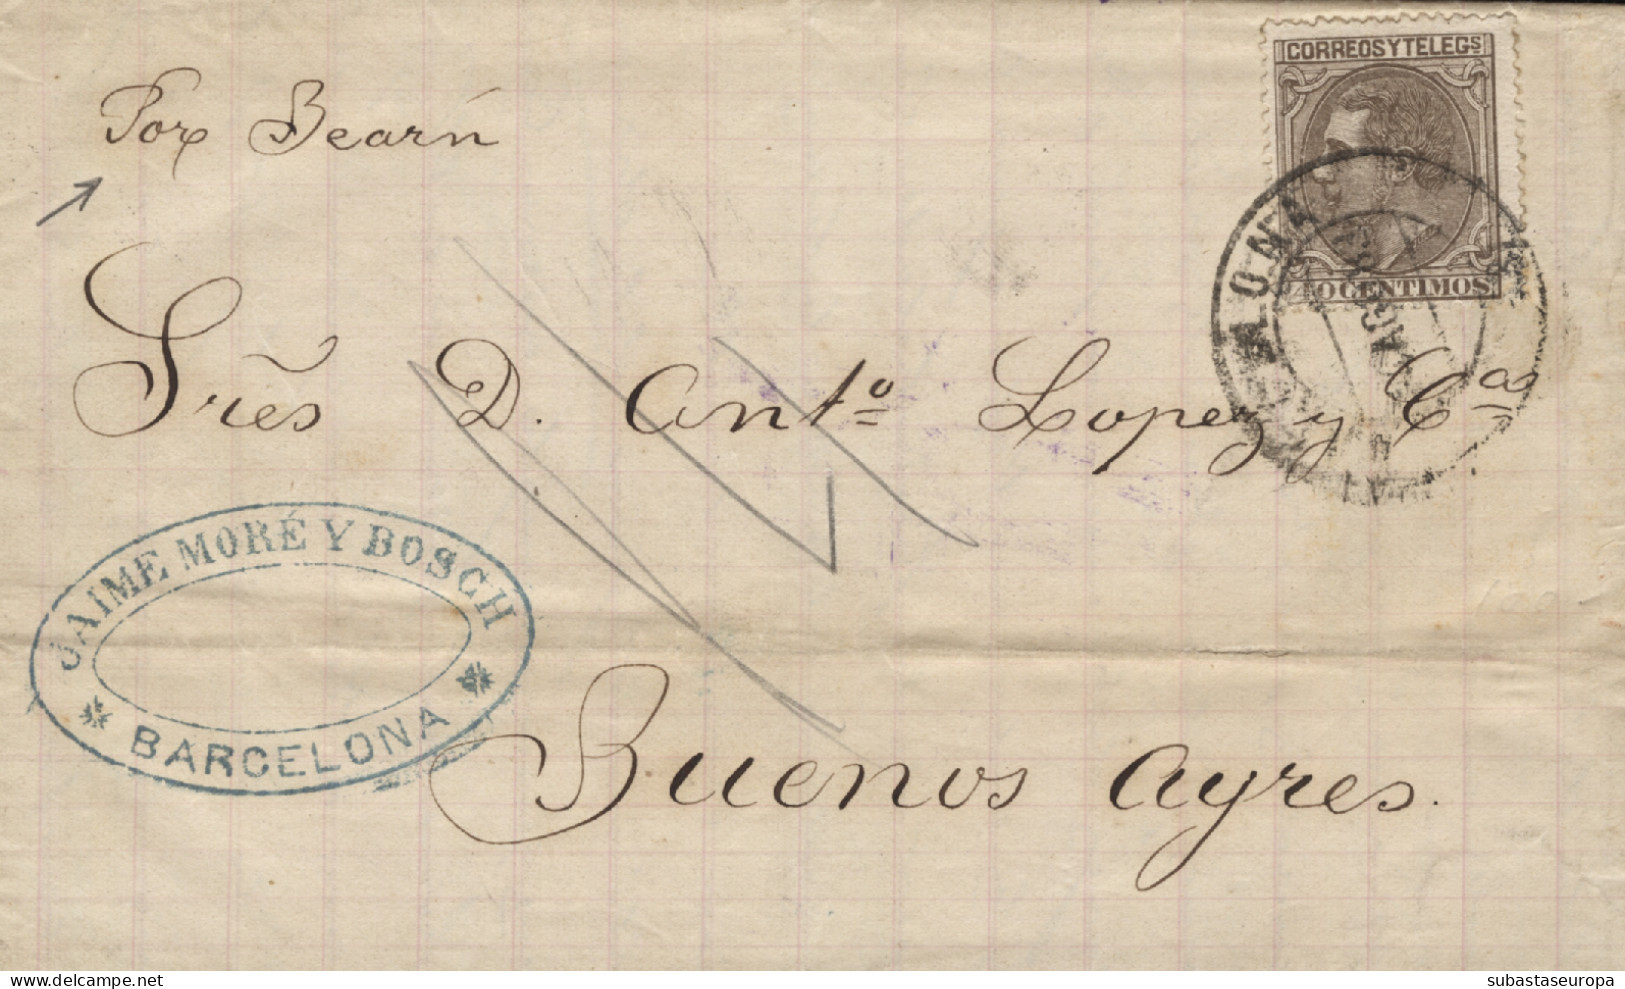 Ø 205 En Carta De Barcelona A Buenos Aires, El Año 1883. Manuscrito "Por Bearn". Llegada Al Dorso. - Lettres & Documents